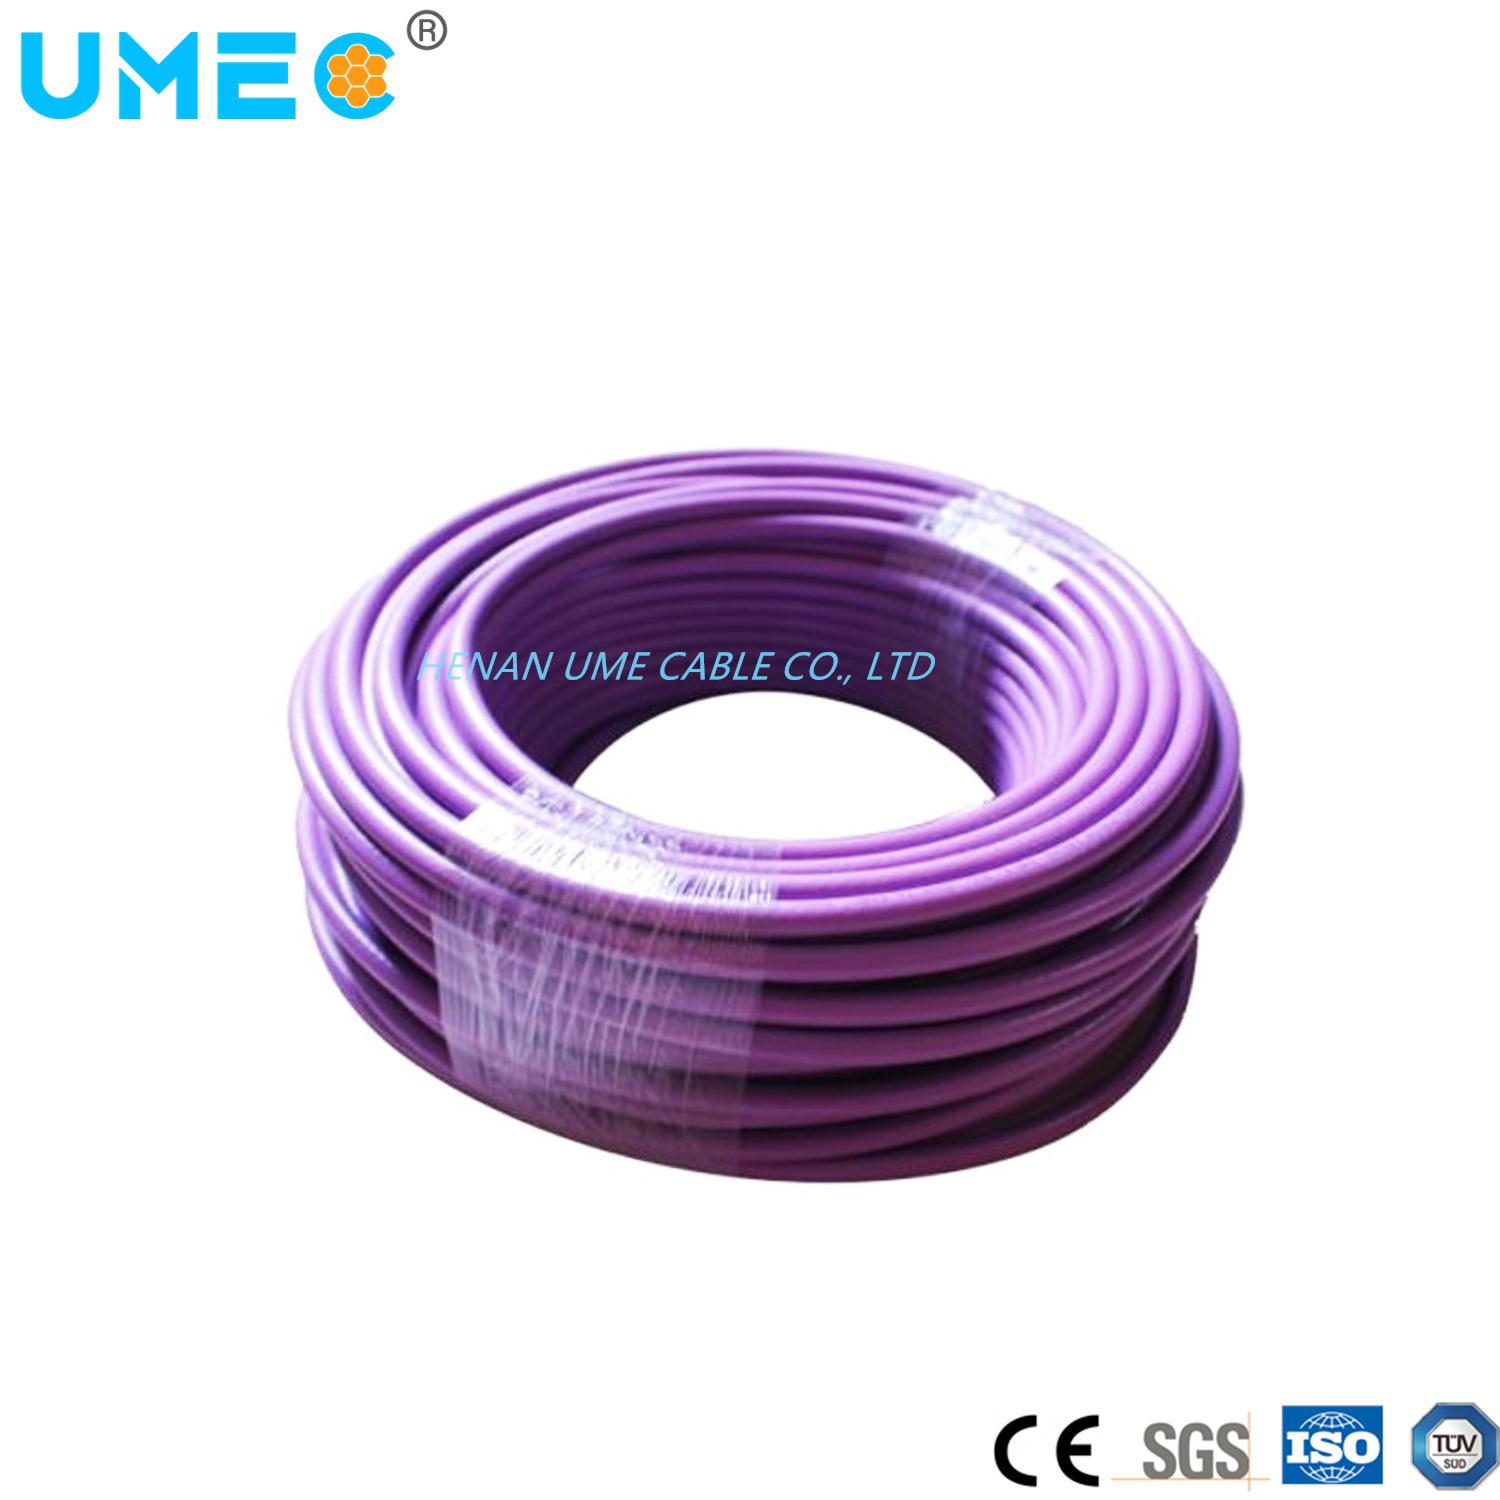 
                Провод и кабель/6xv фиолетовый кабель 6xv1830-0eh10 медный проводник Низкое напряжение Соединительный кабель
            